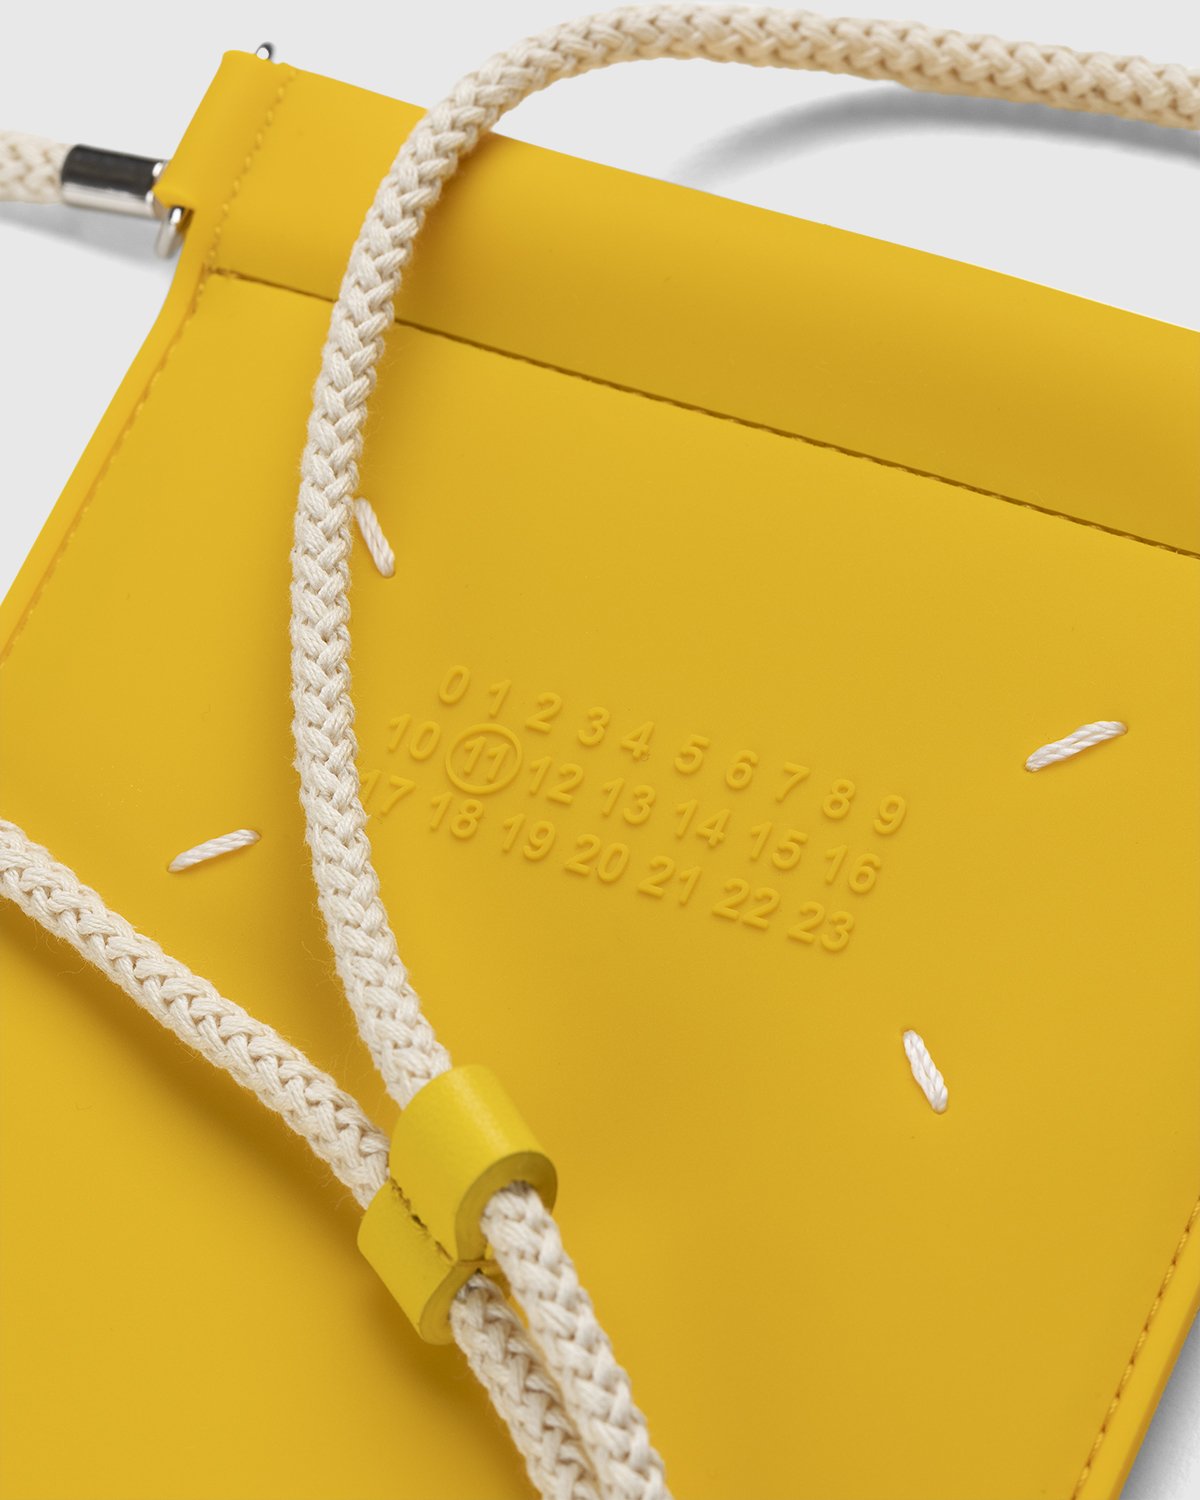 Maison Margiela - Rubber Leather Phone Case Yellow - Lifestyle - Yellow - Image 3